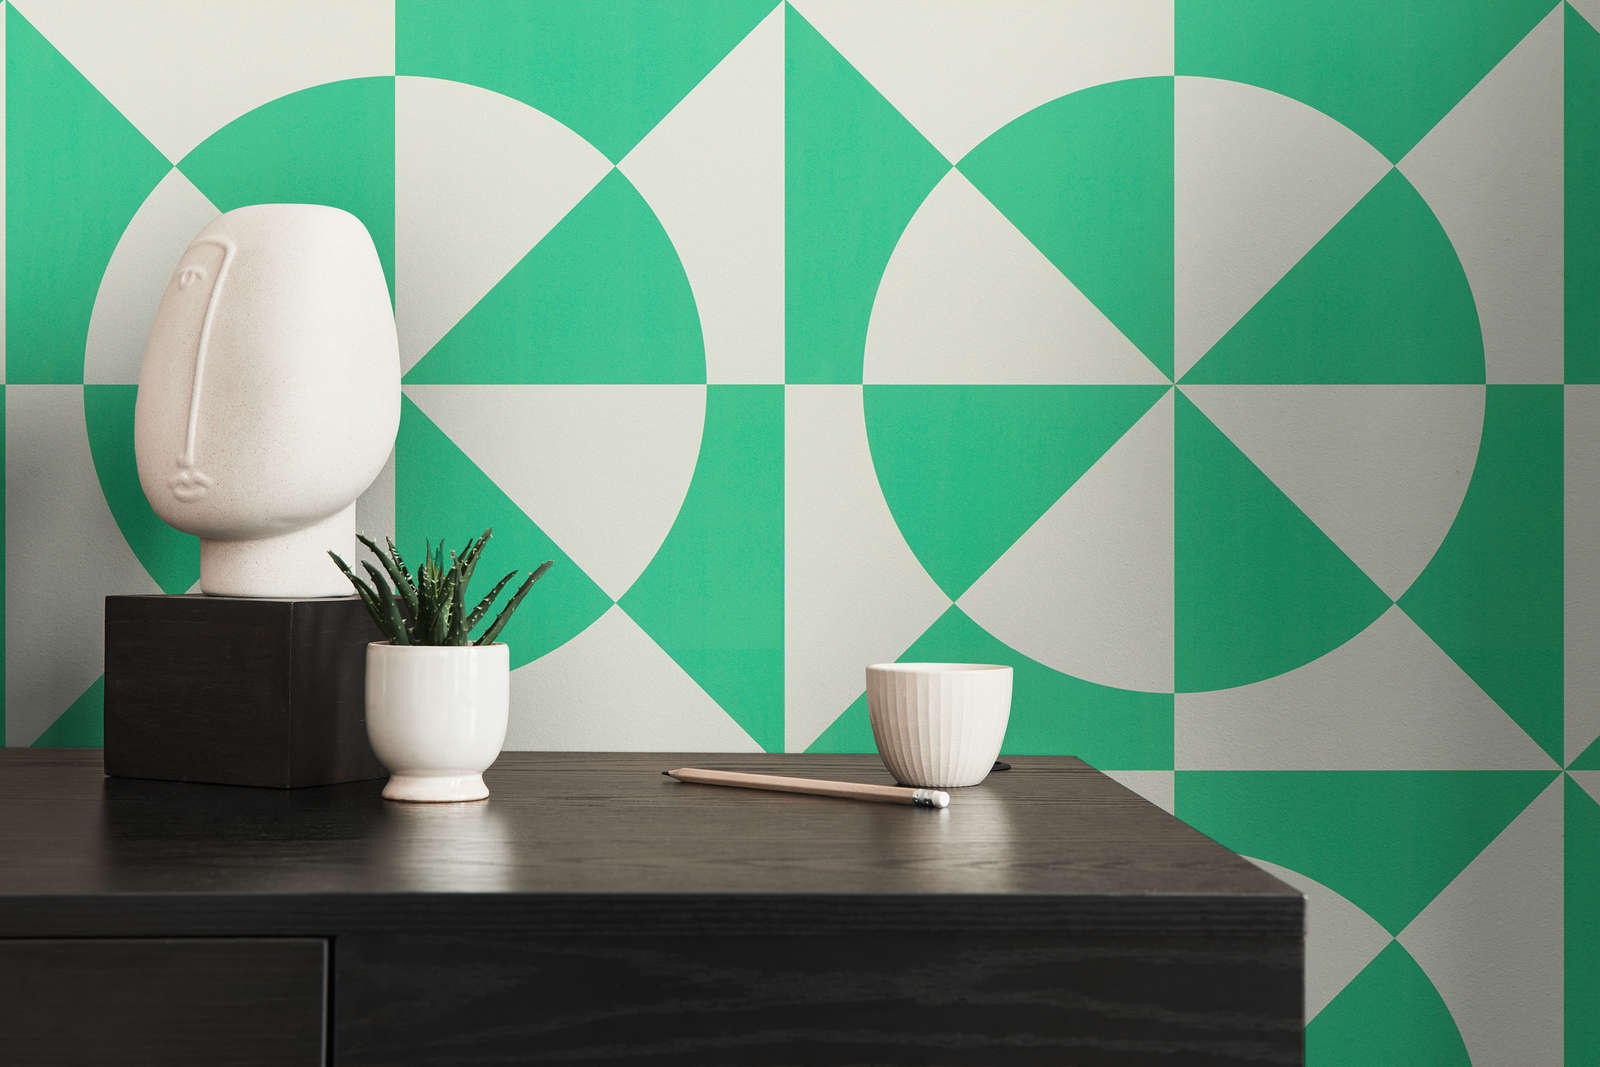             Vliesbehang met geometrische vormen - groen, wit
        